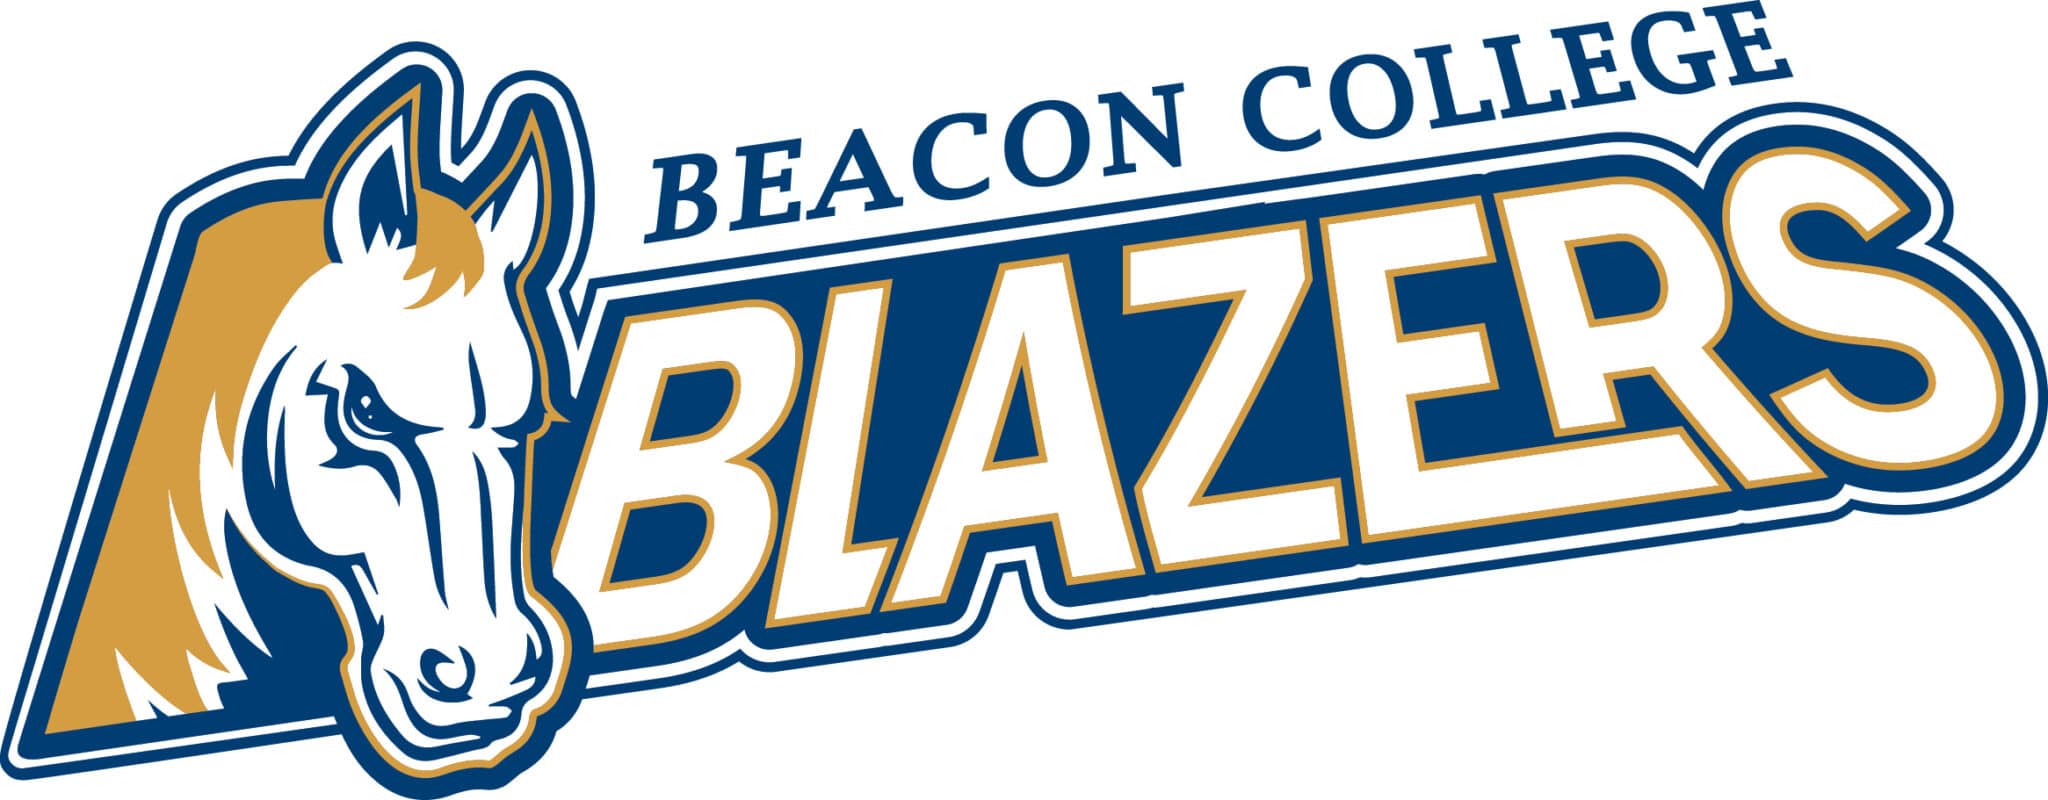 Beacon College Blazers logo